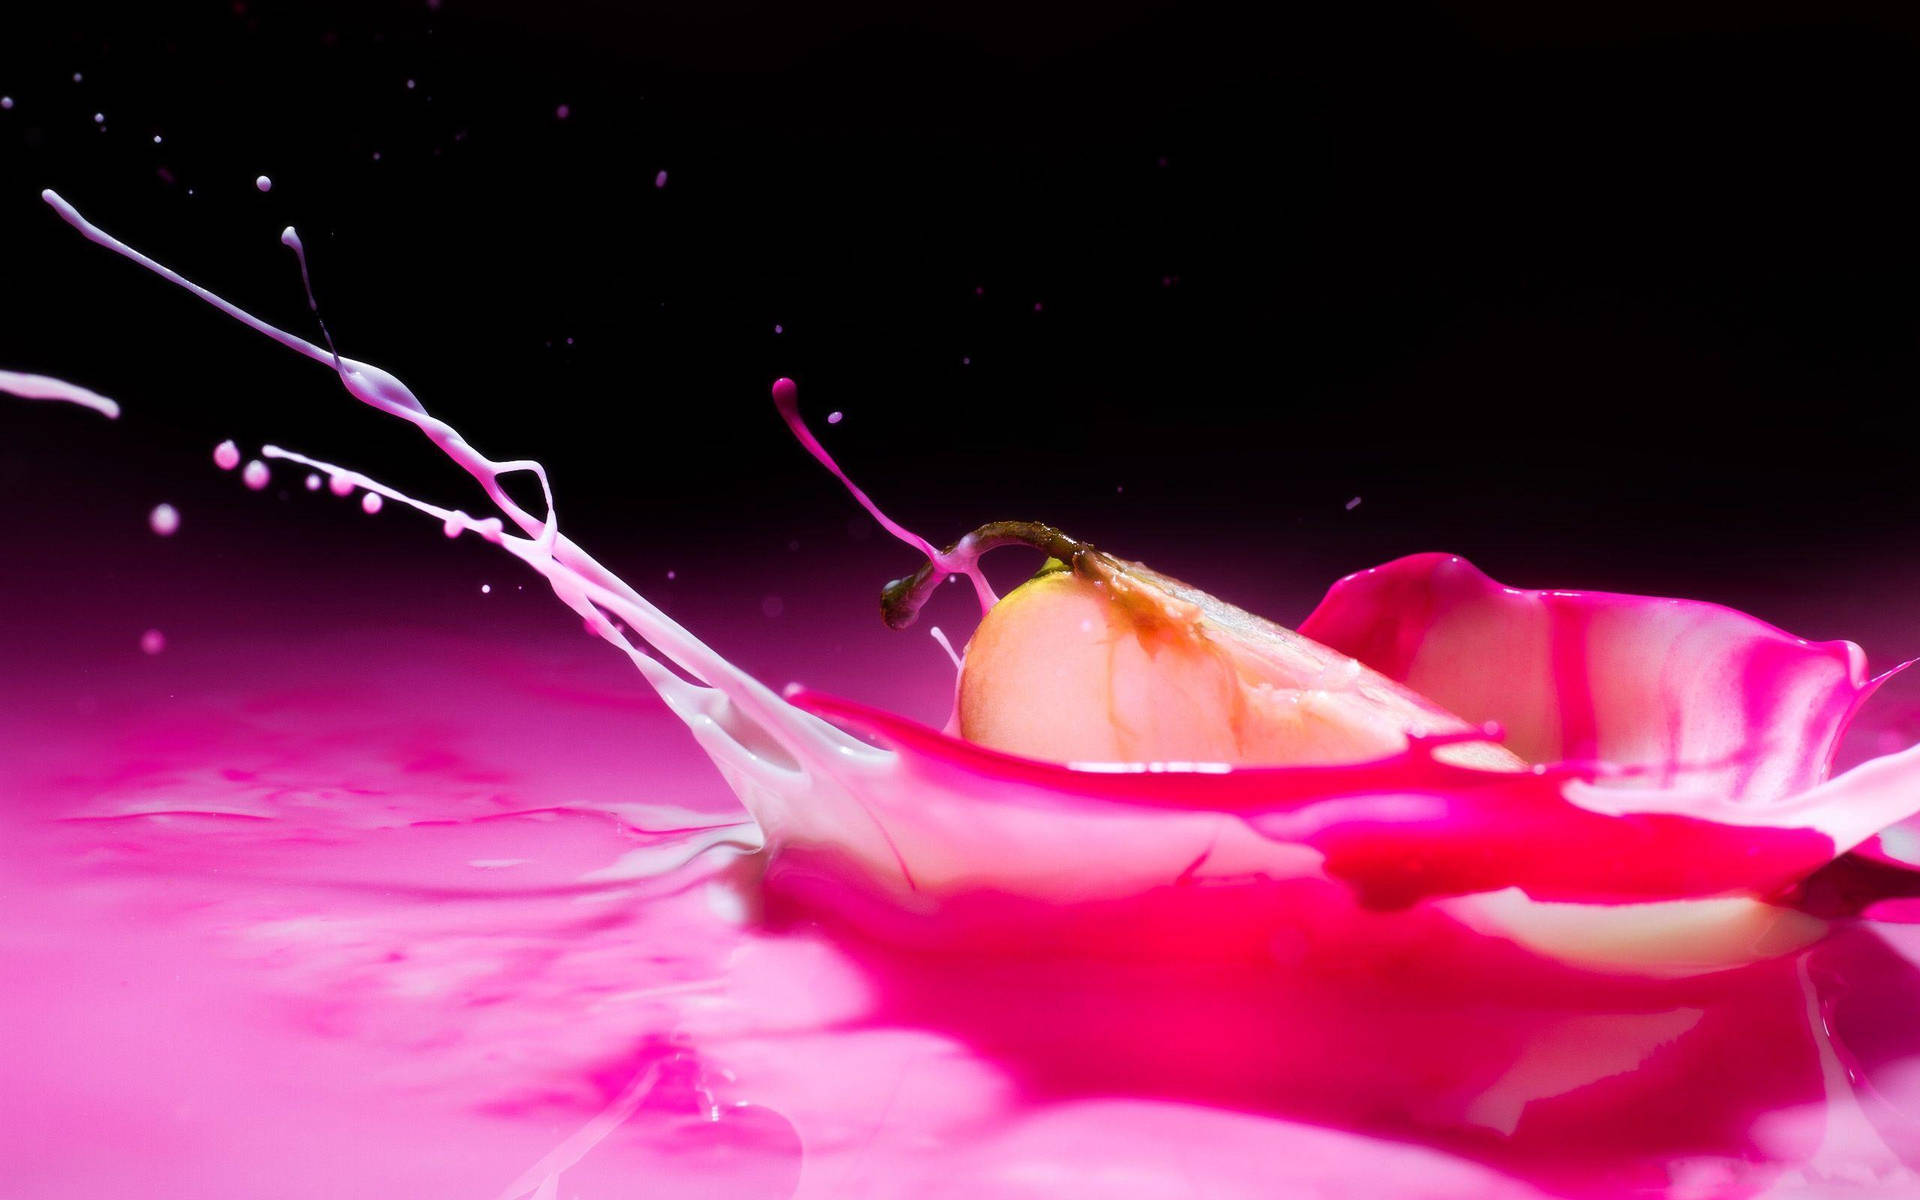 Rosavätskesplash. Wallpaper